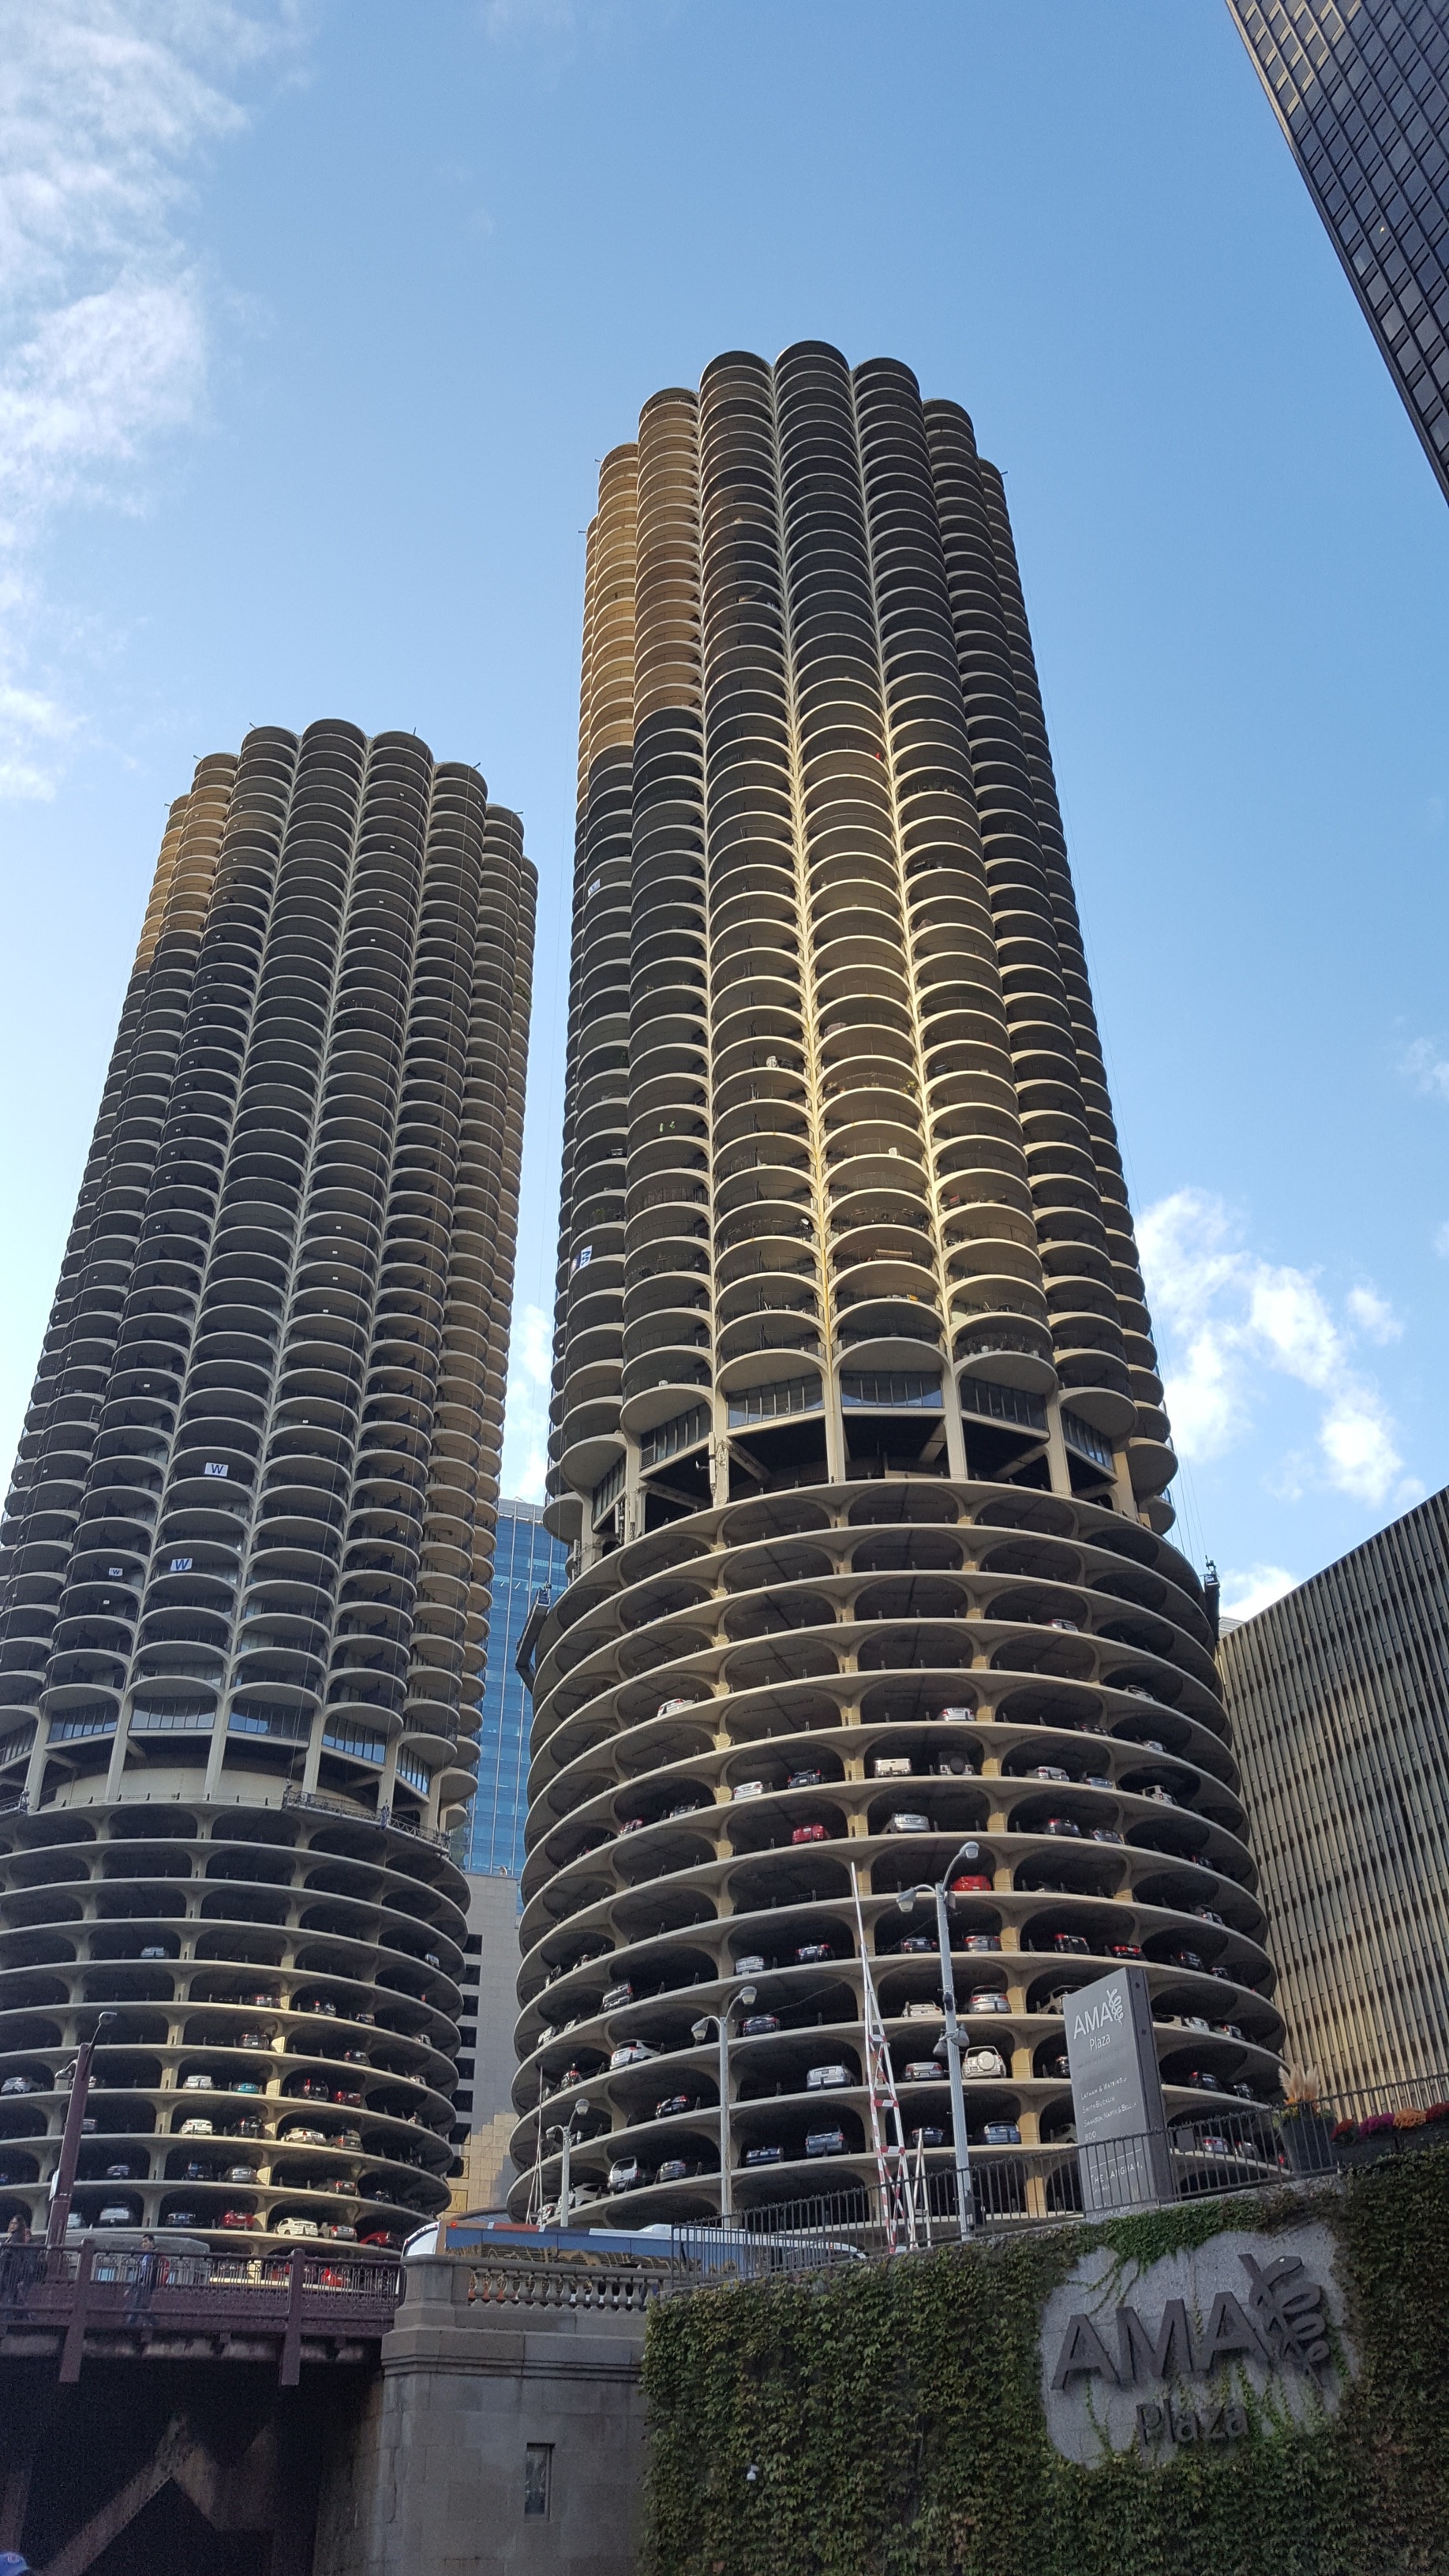 2 concrete high rise buildings